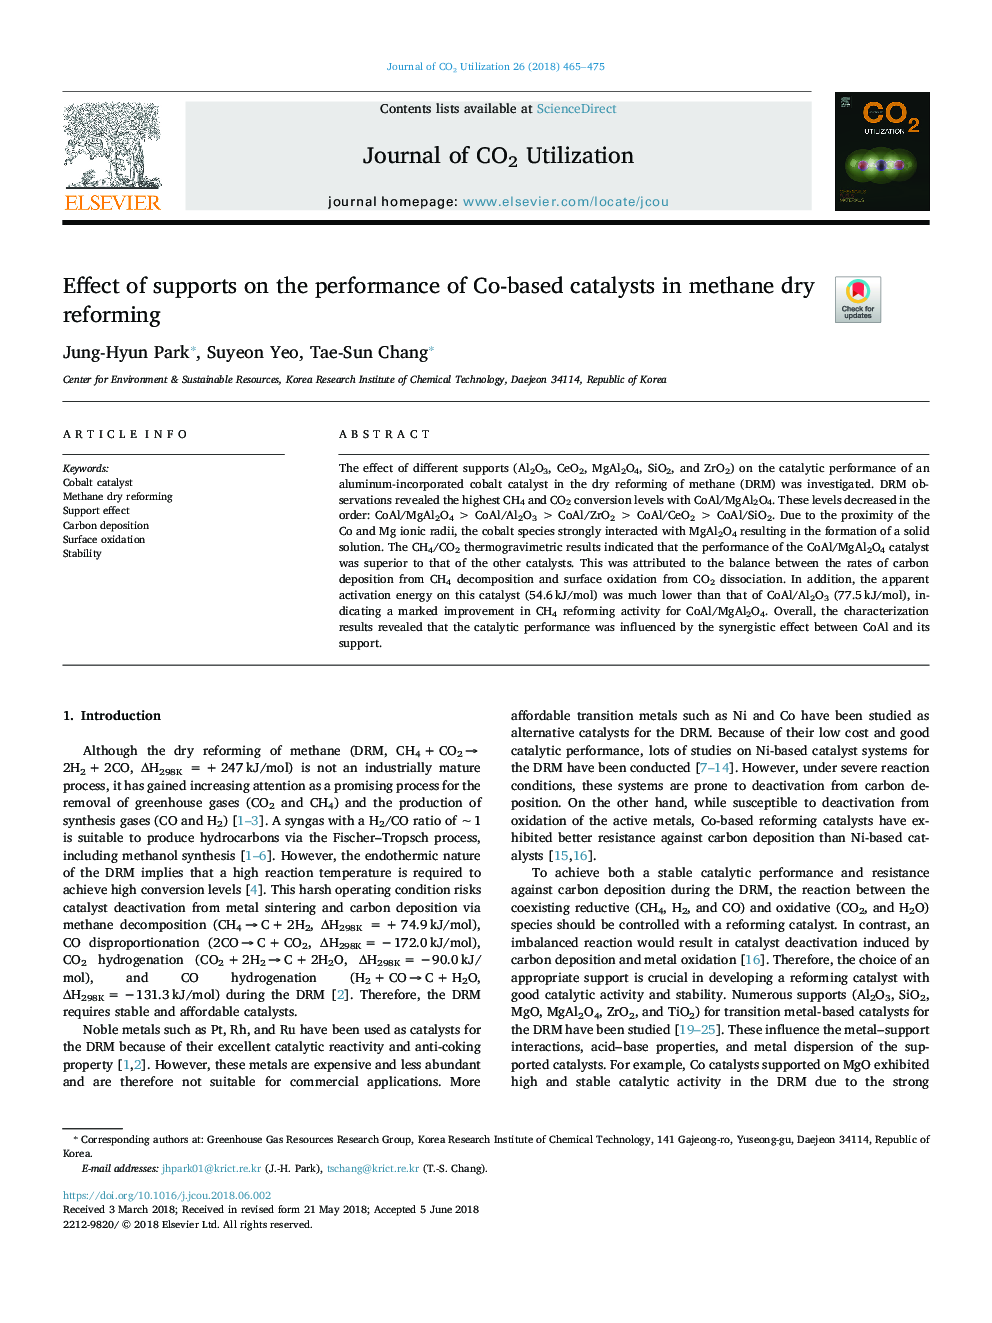 اثر پشتیبانی در عملکرد کاتالیزورهای همگن در ریفرنج خشک متان 